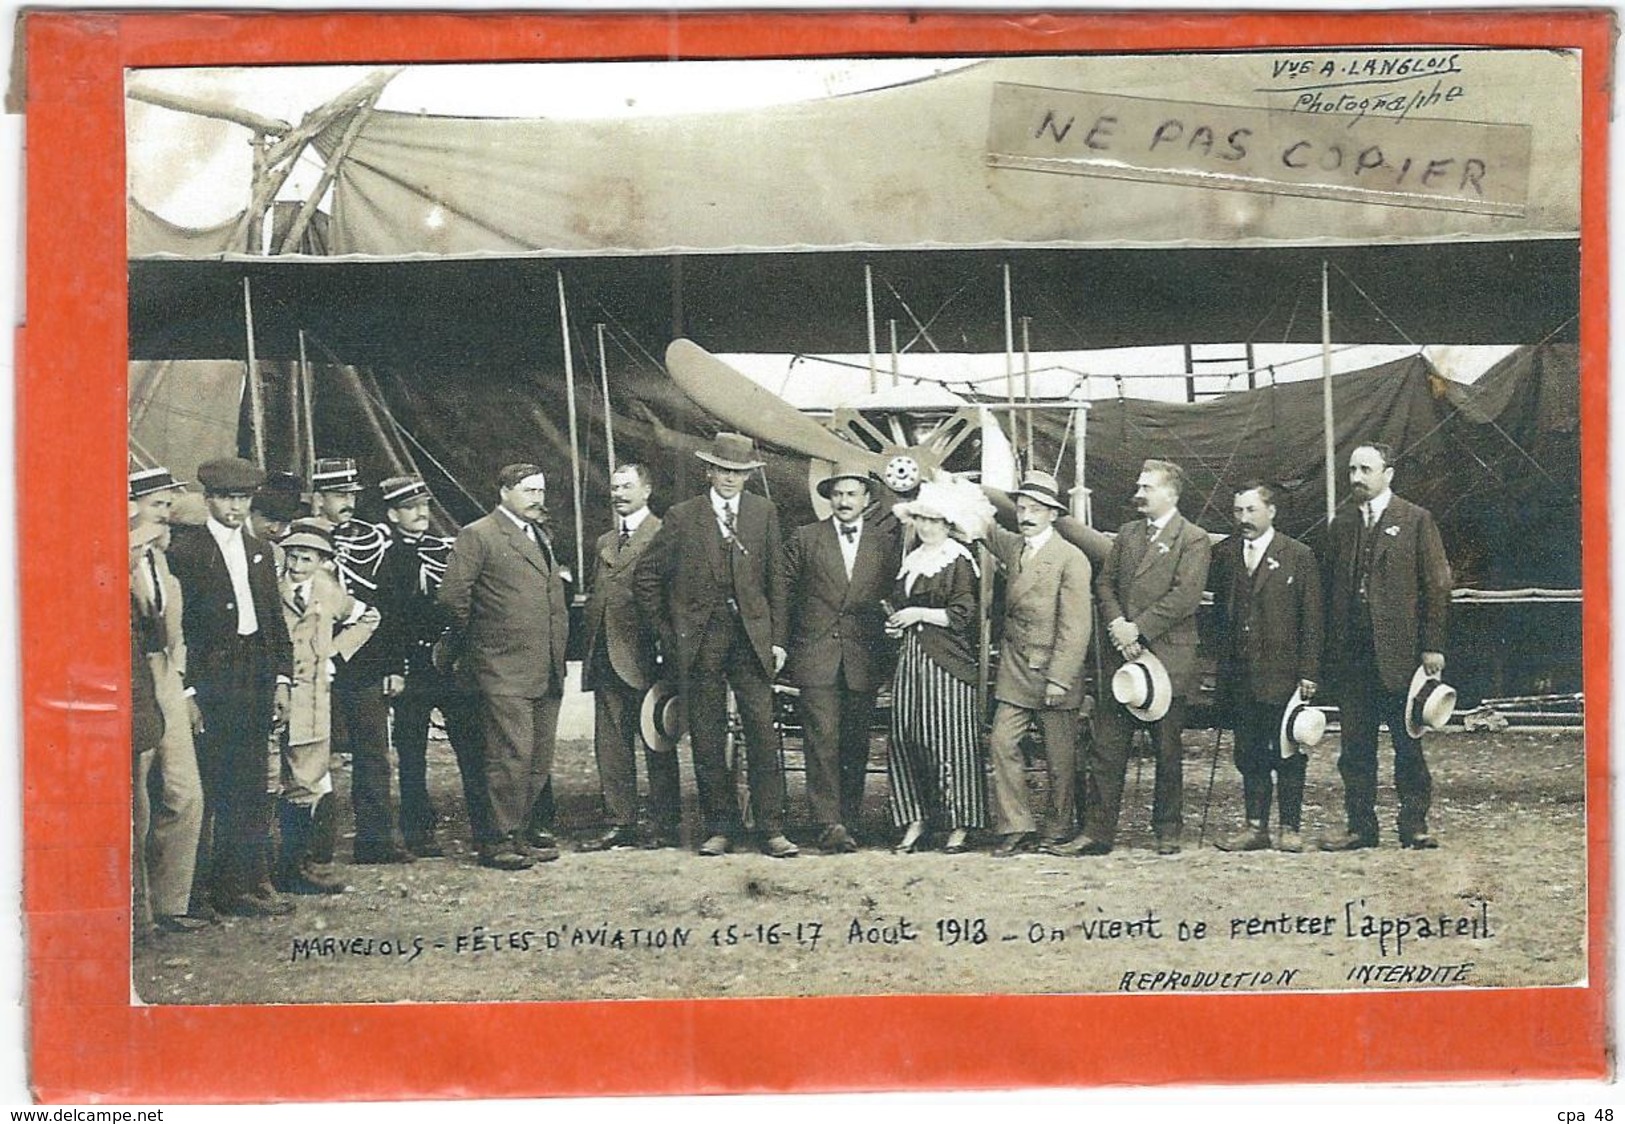 Lozere : Marvejols, Reproduction Sur Papier Photo, Fetes D'Aviation Aout 1918... - Marvejols